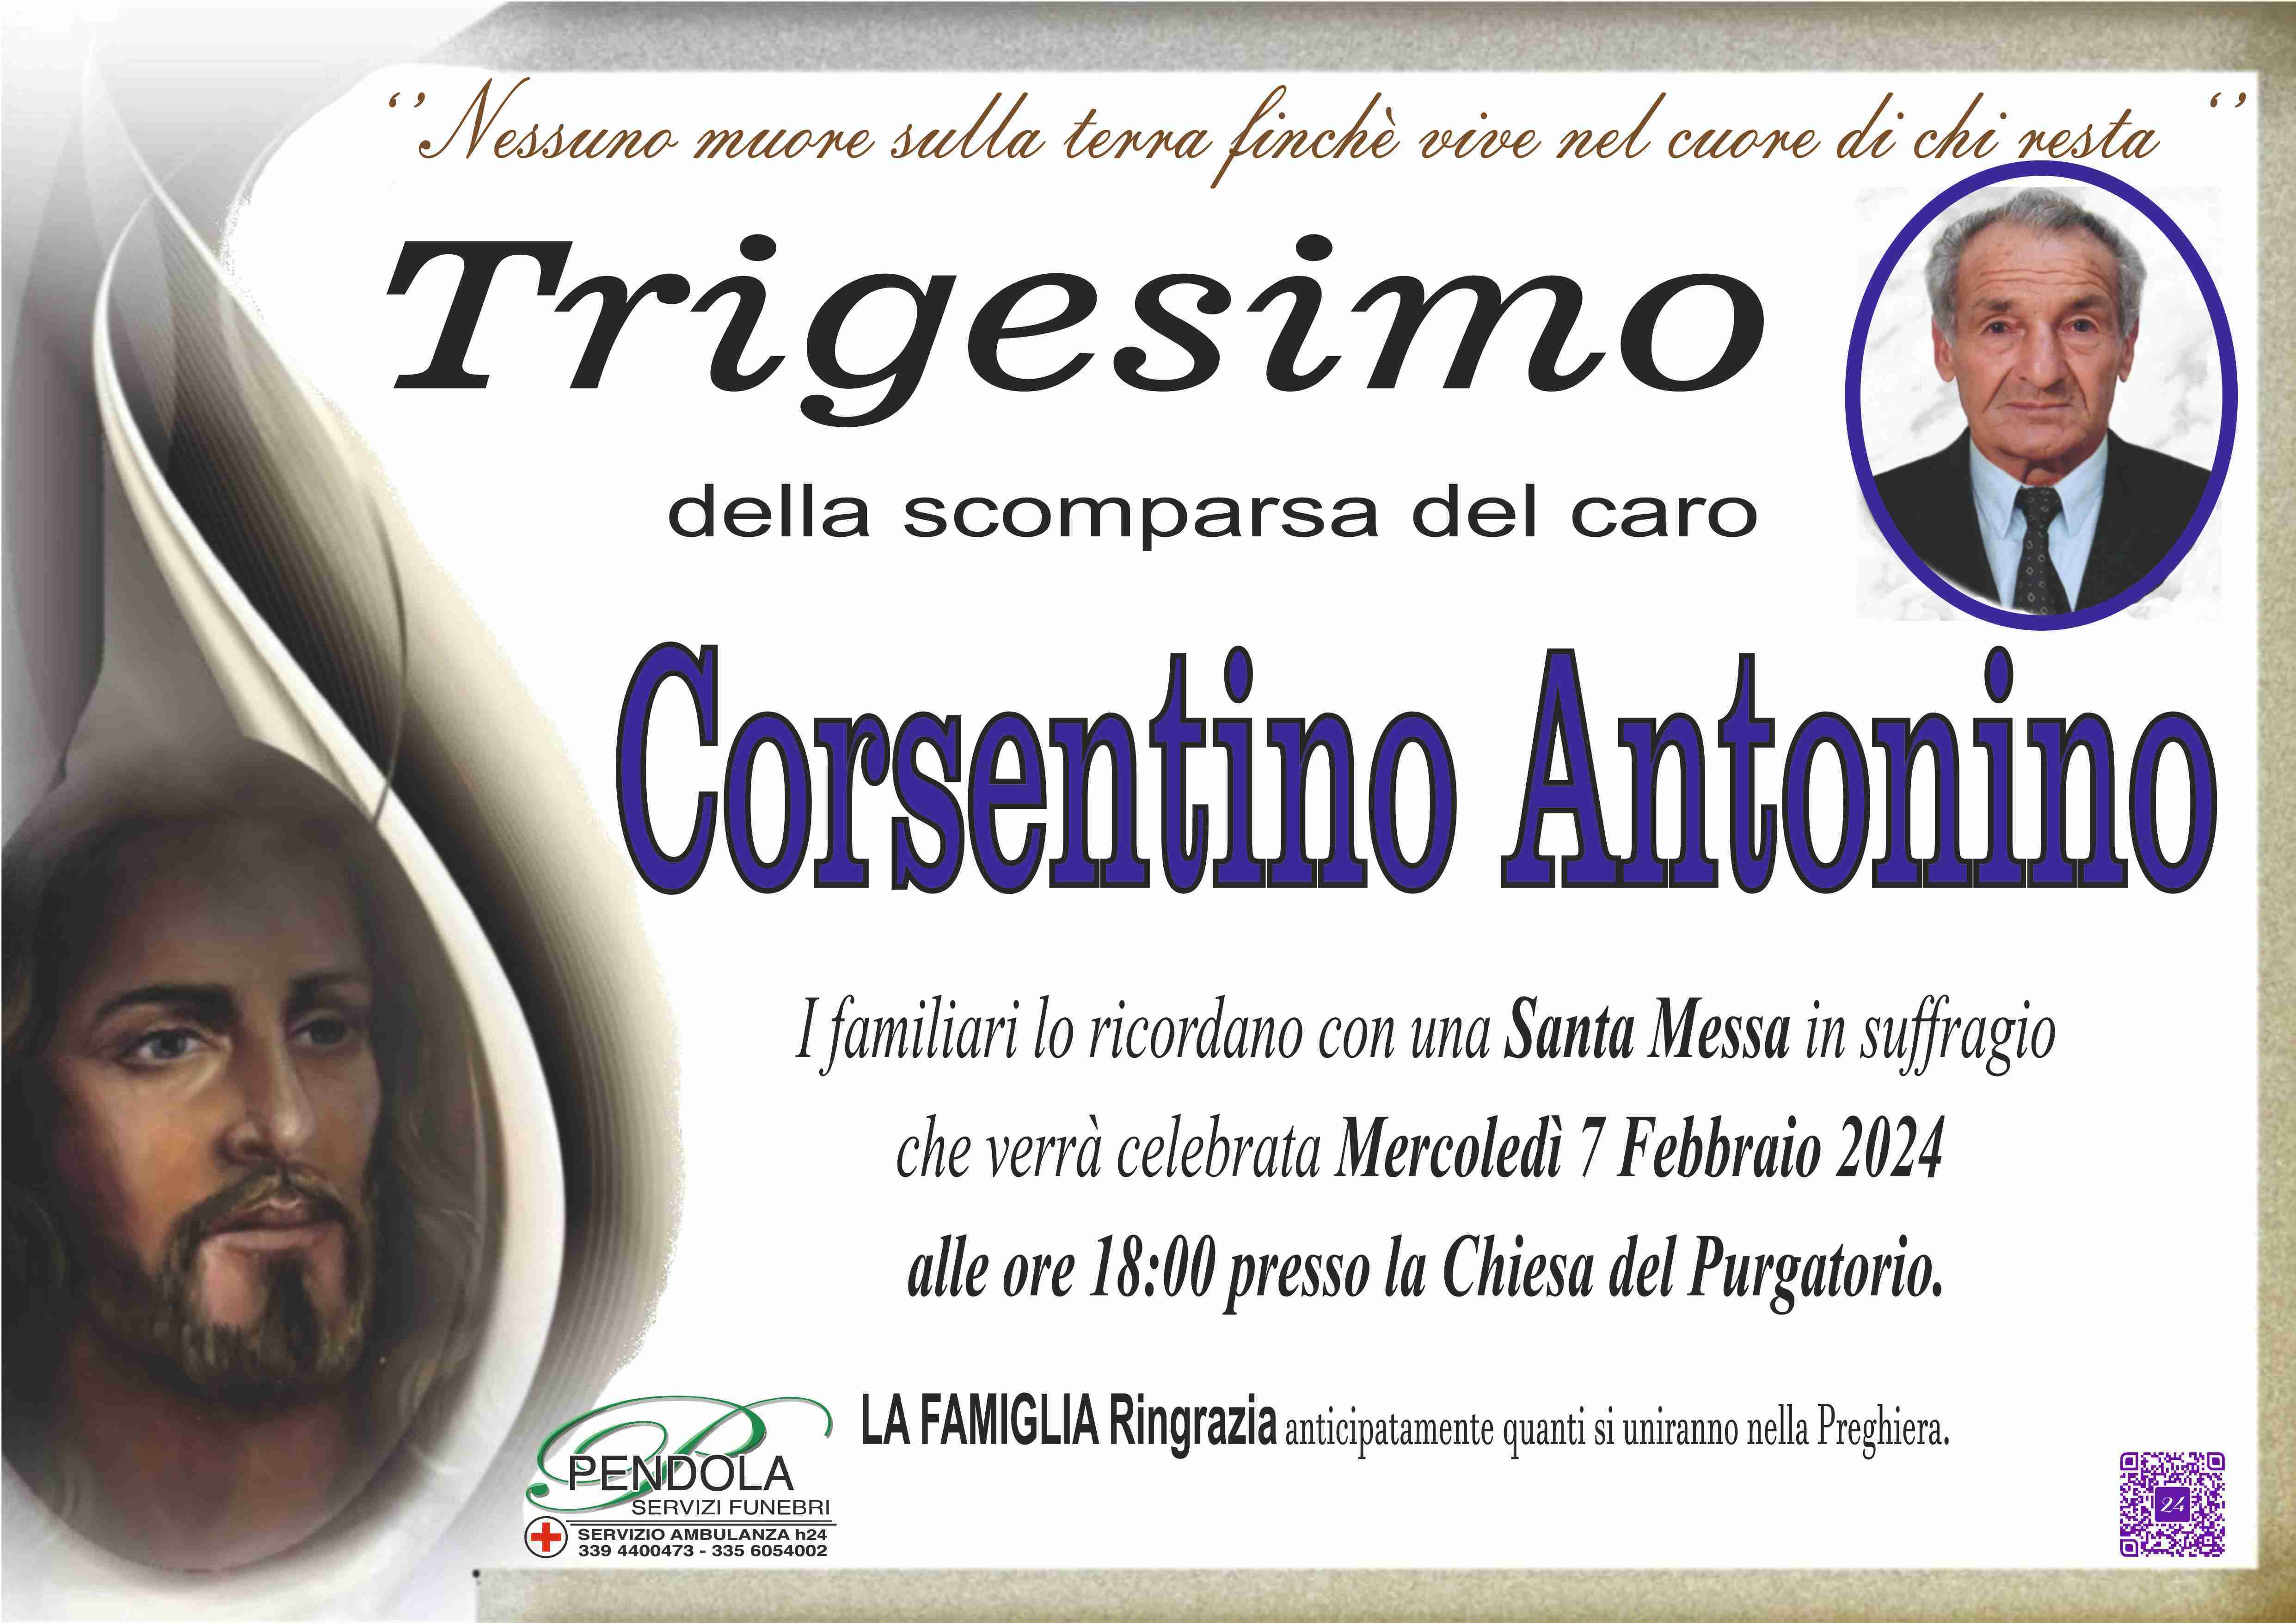 Corsentino Antonino